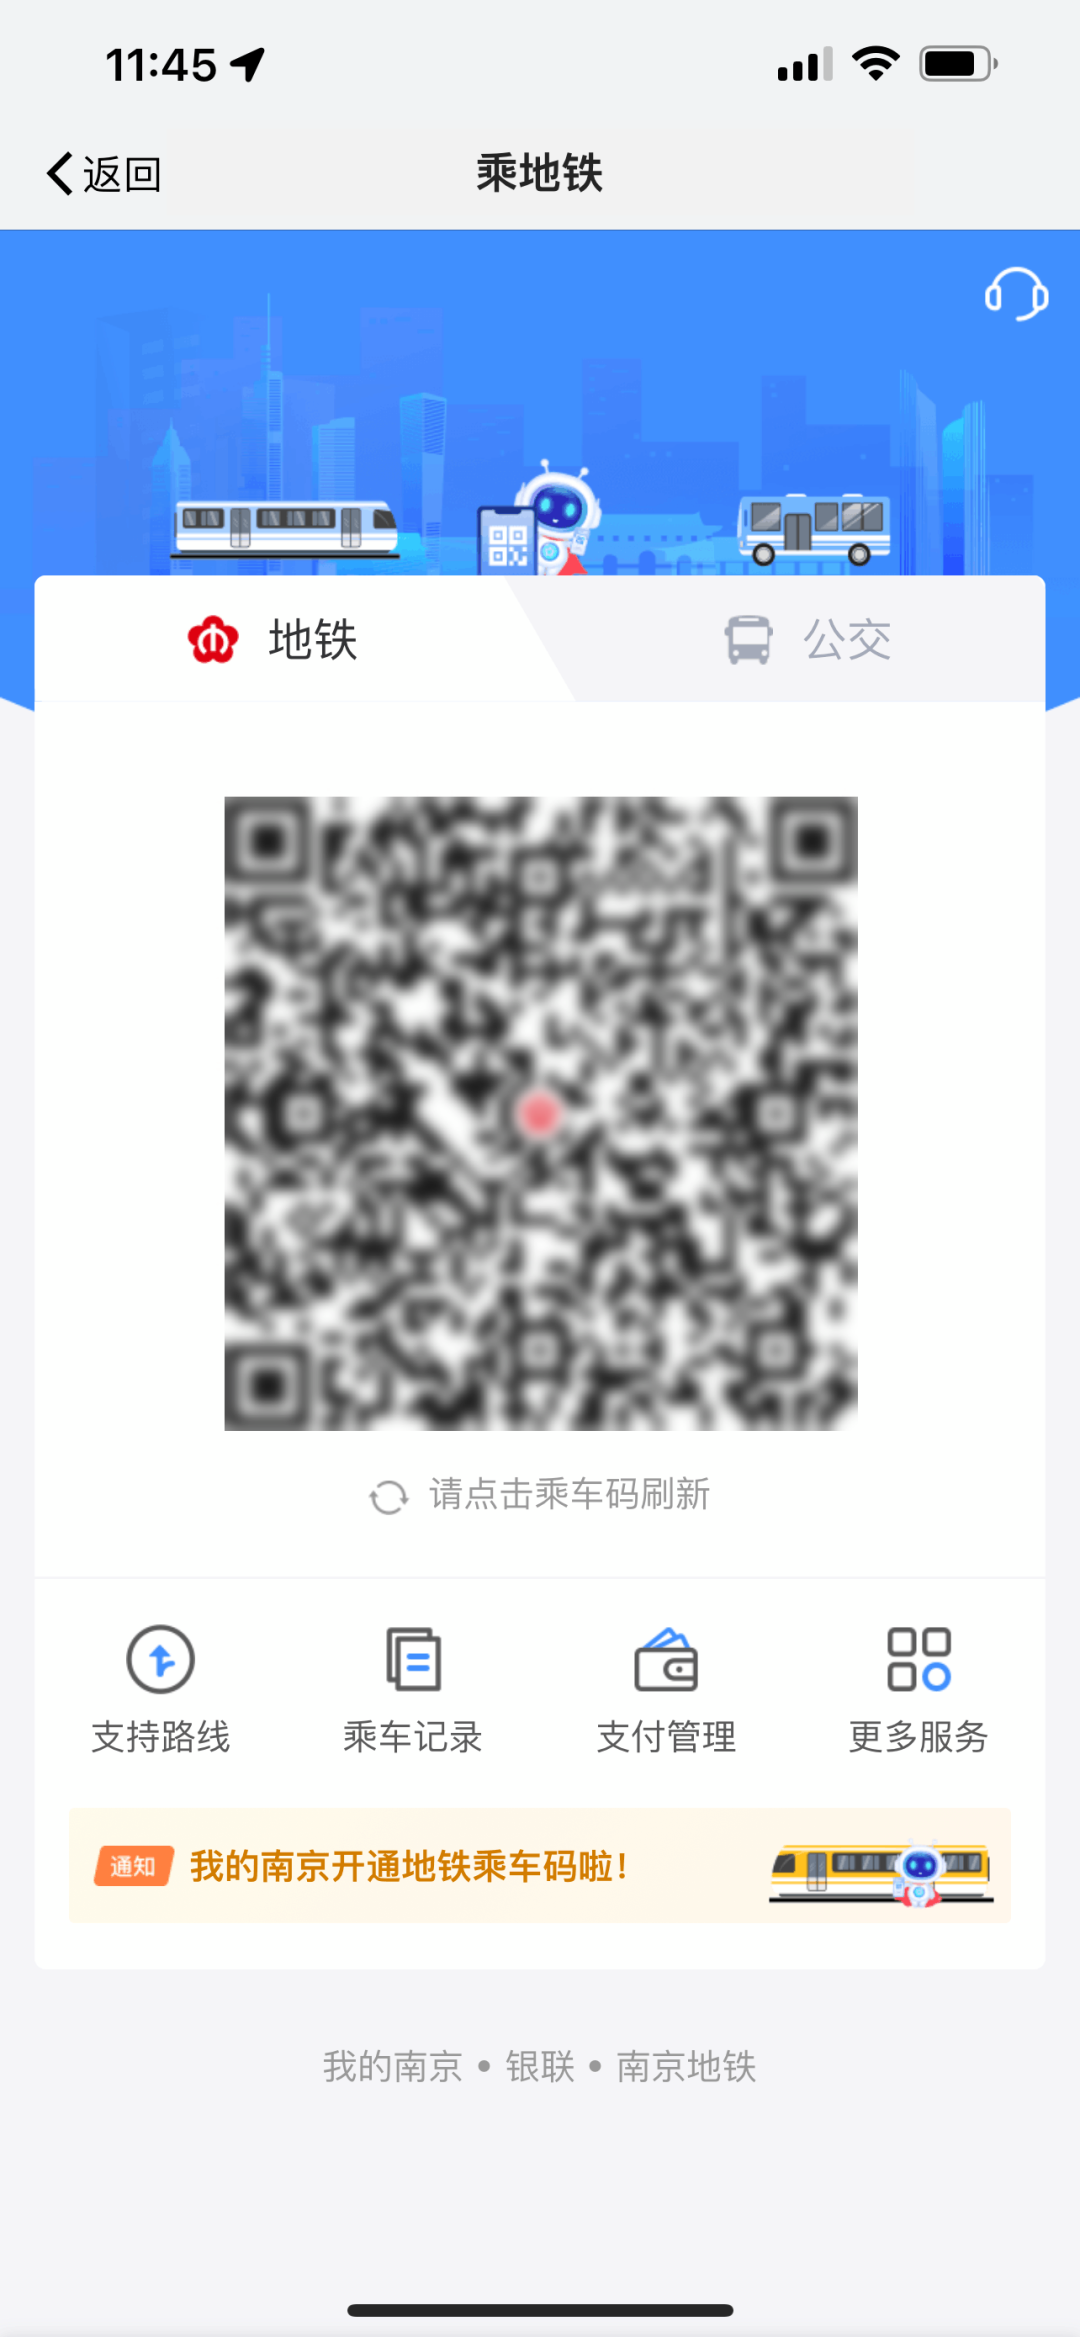 “我的南京”APP 正式上线地铁乘车码功能